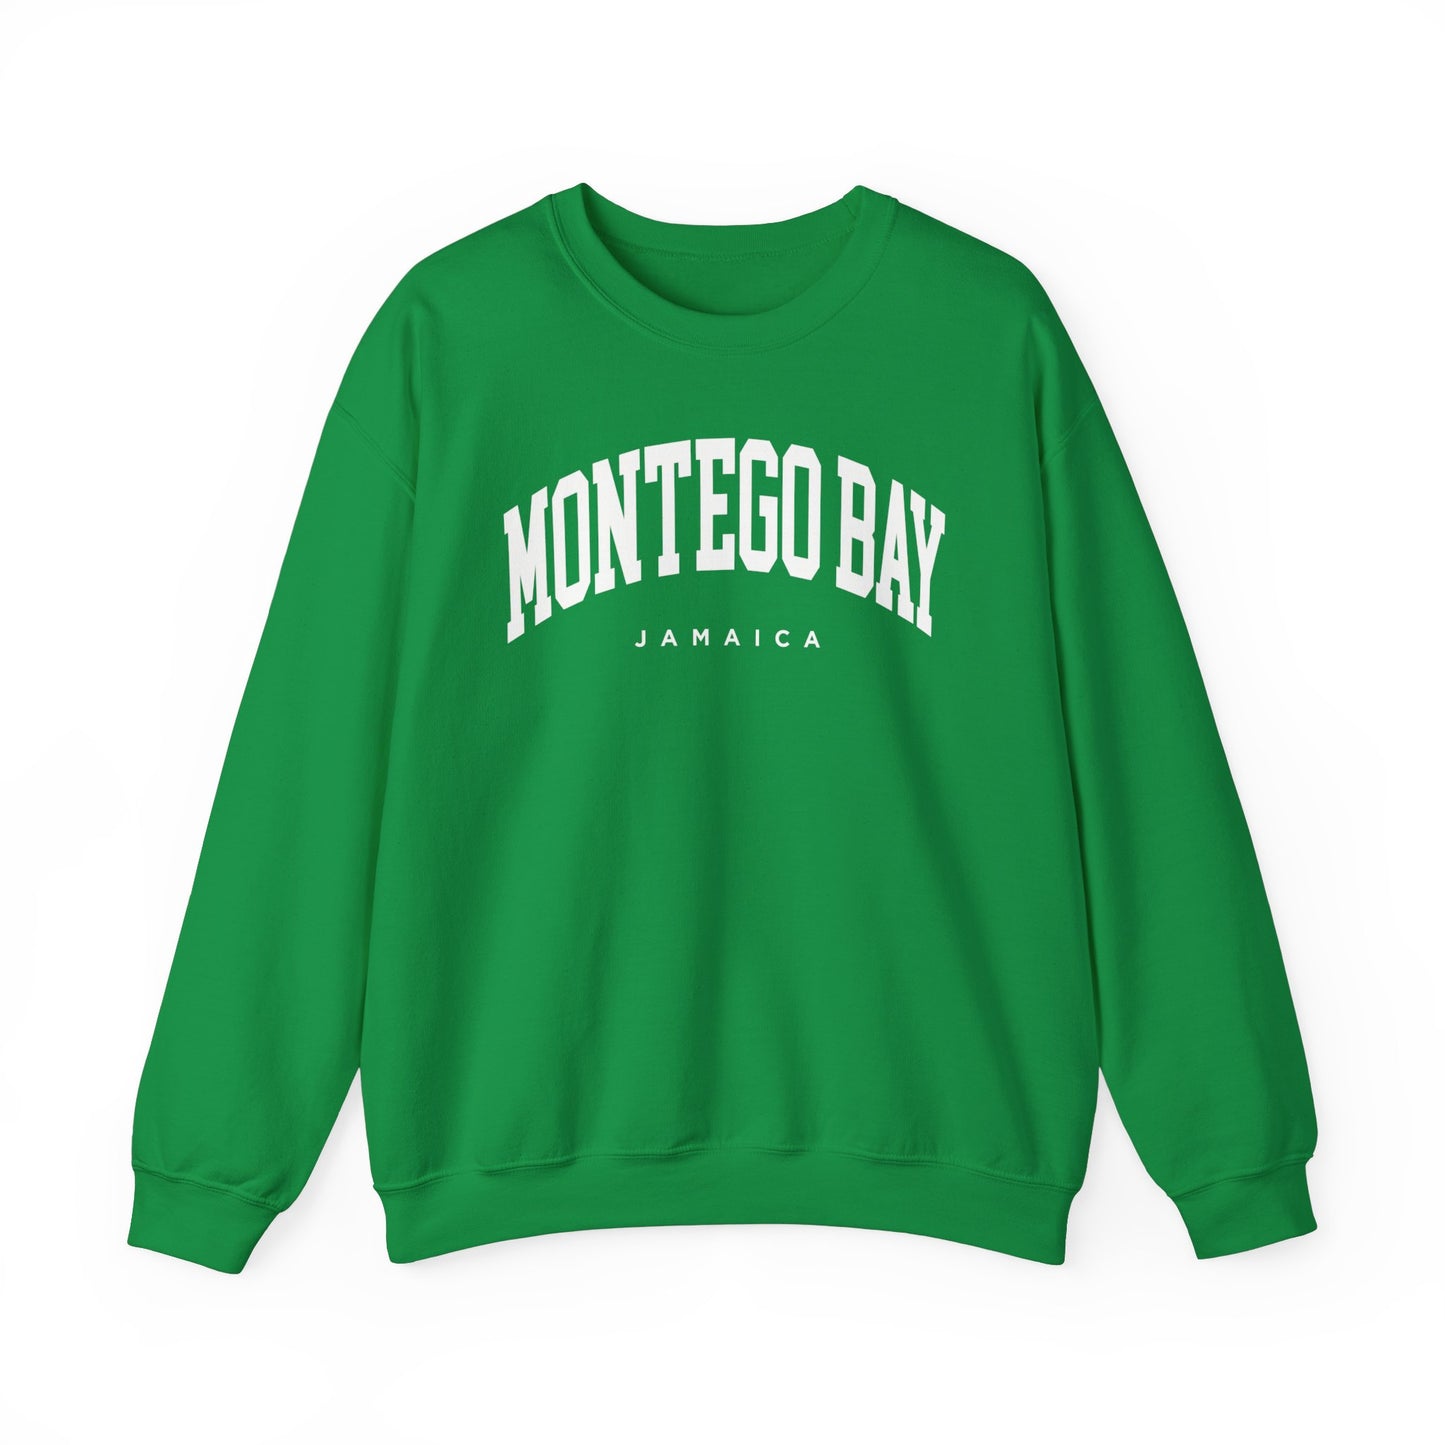 Montego Bay Jamaica Sweatshirt